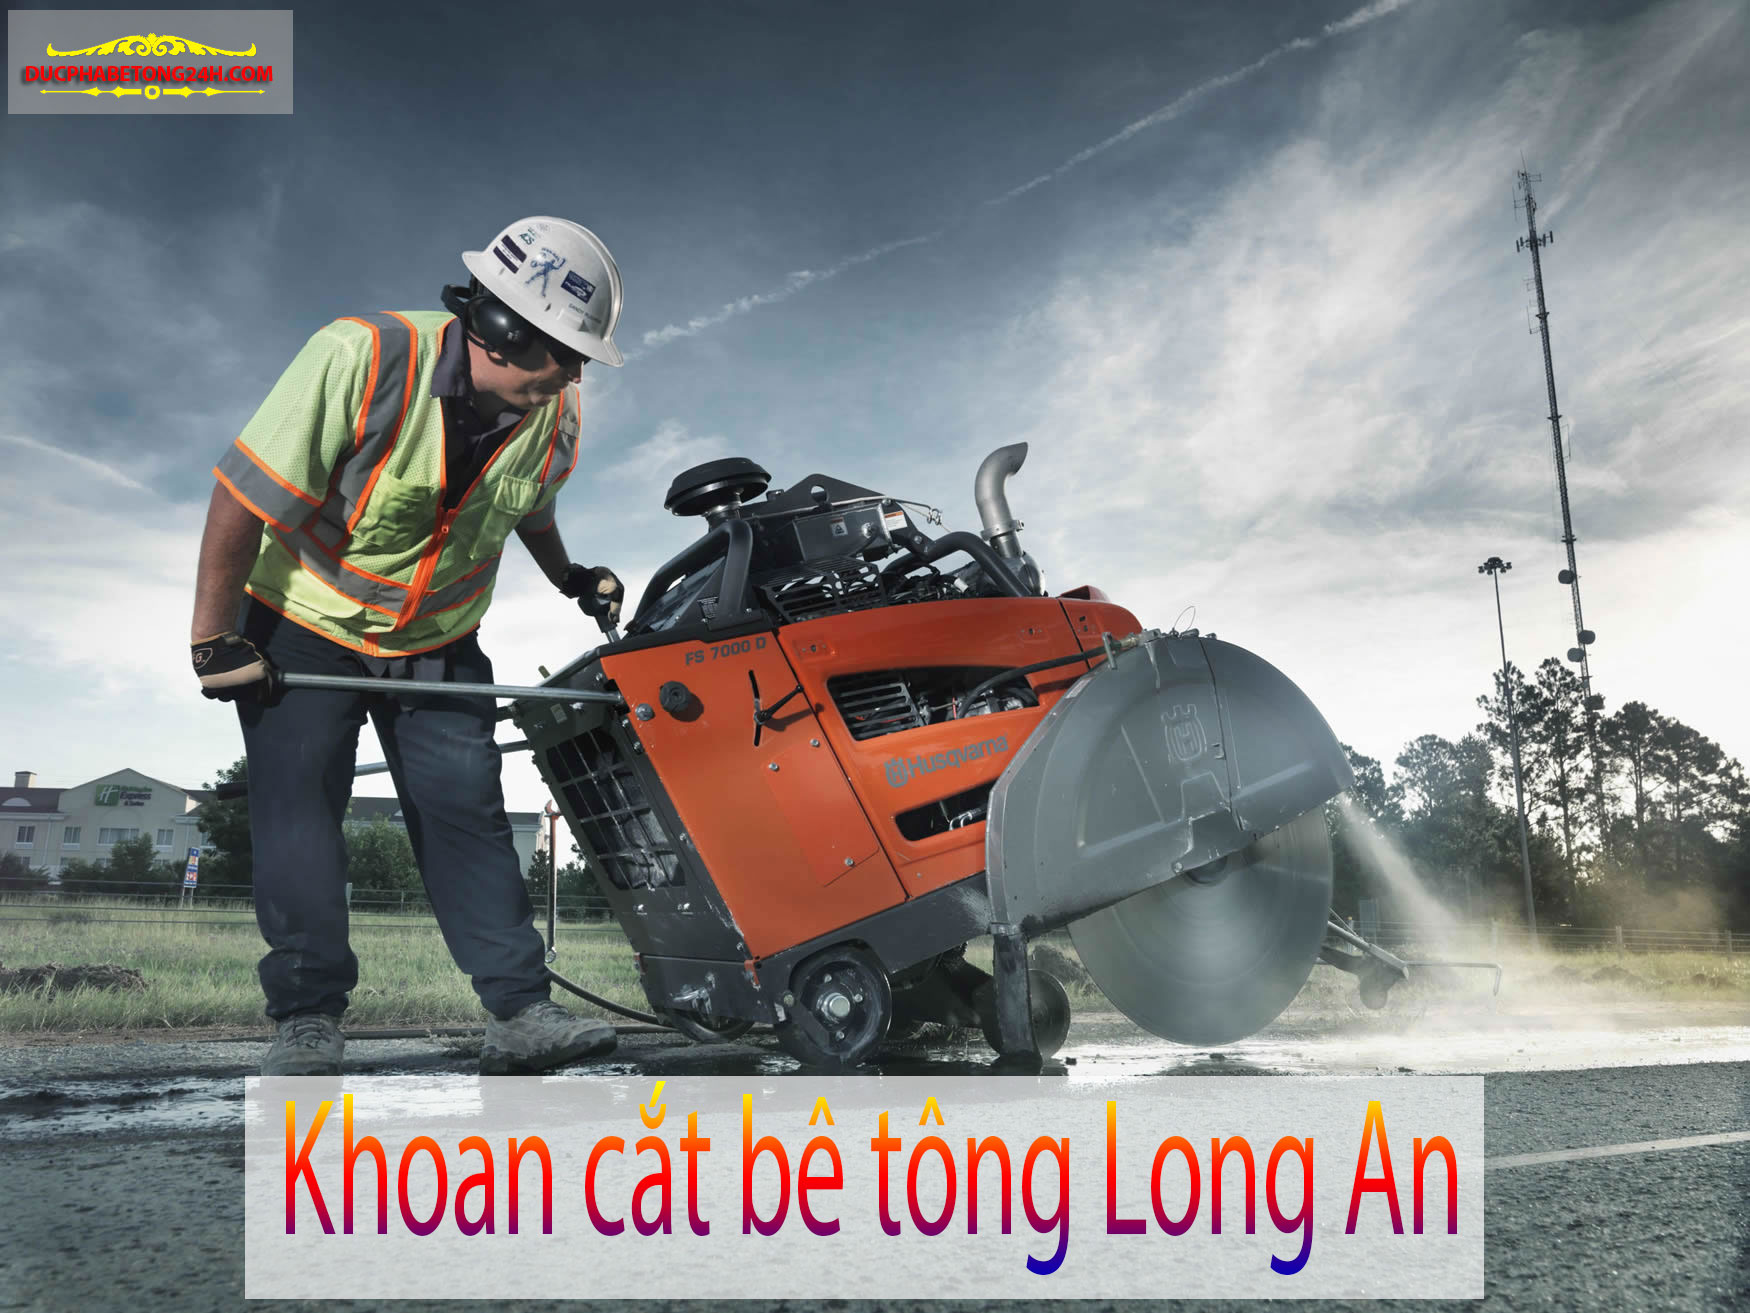 Khoan Cắt Bê Tông Tỉnh Long An, Khoan Cat Be Tong Tinh Long An